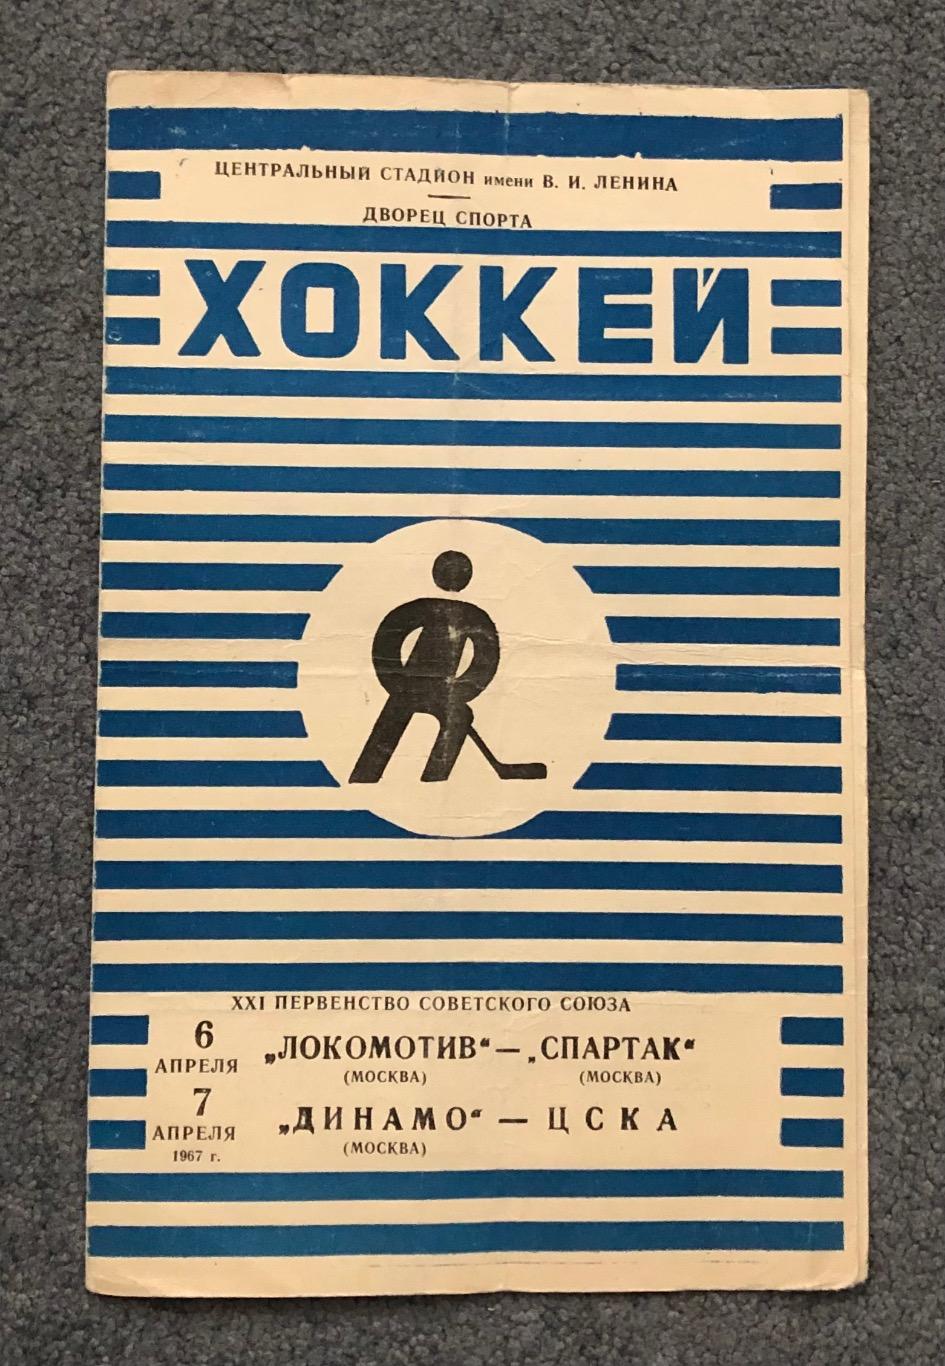 Локомотив Москва - Спартак Москва, Динамо Москва - ЦСКА, 6 и 7.04.1967